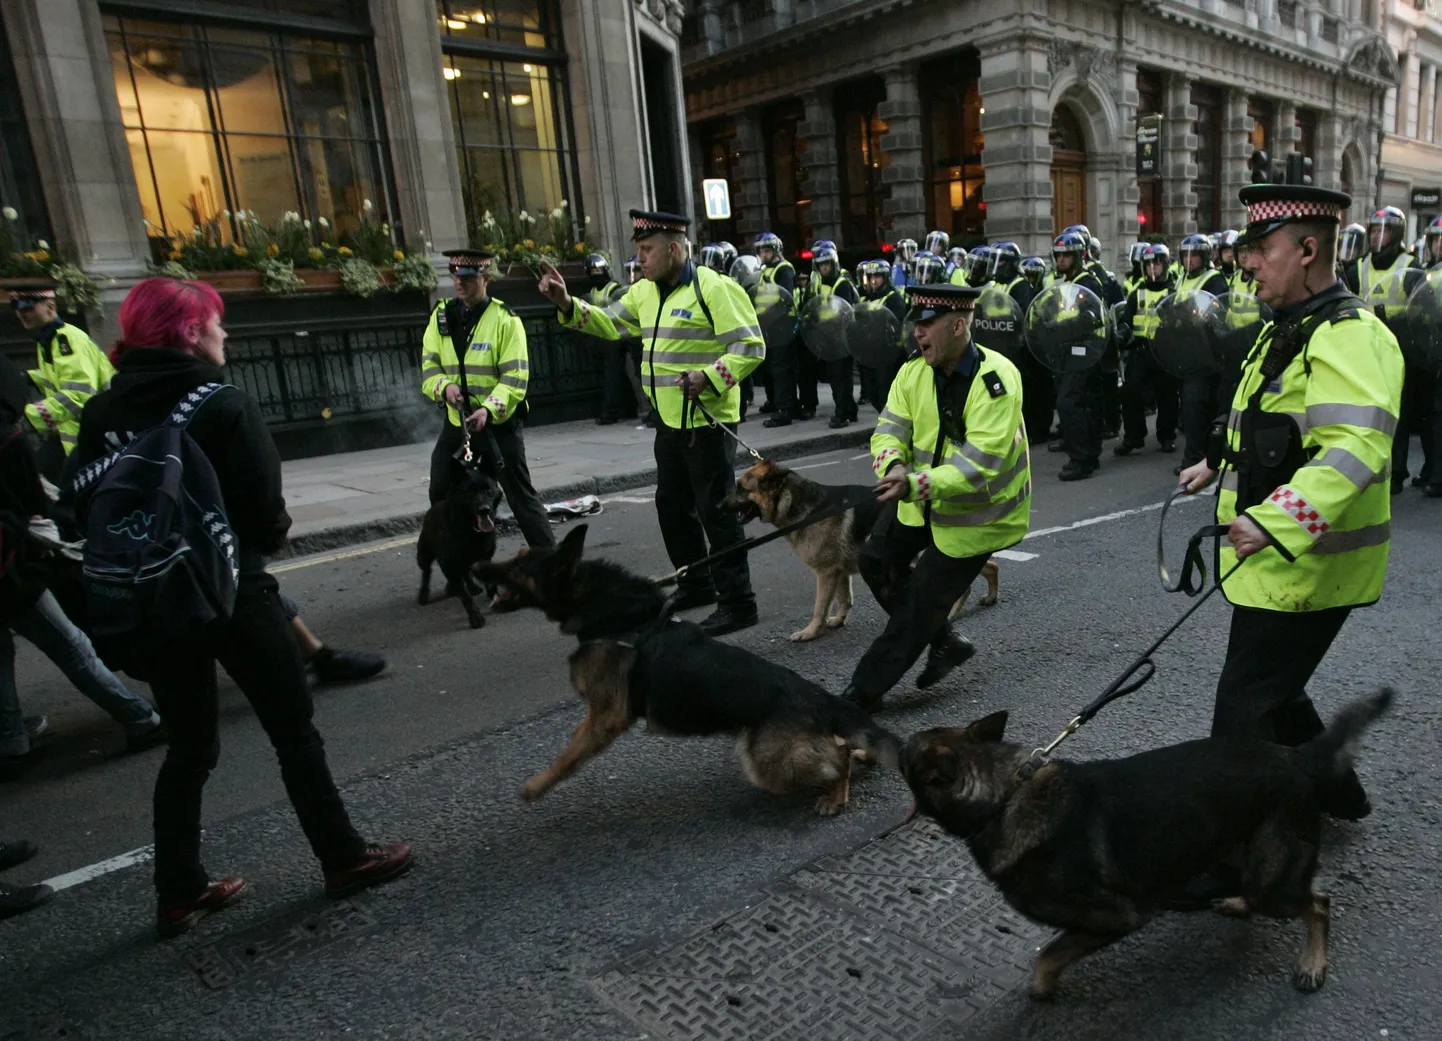 Briti politsei eile Londoni Citys meeleavaldajaid korrale kutsumas.